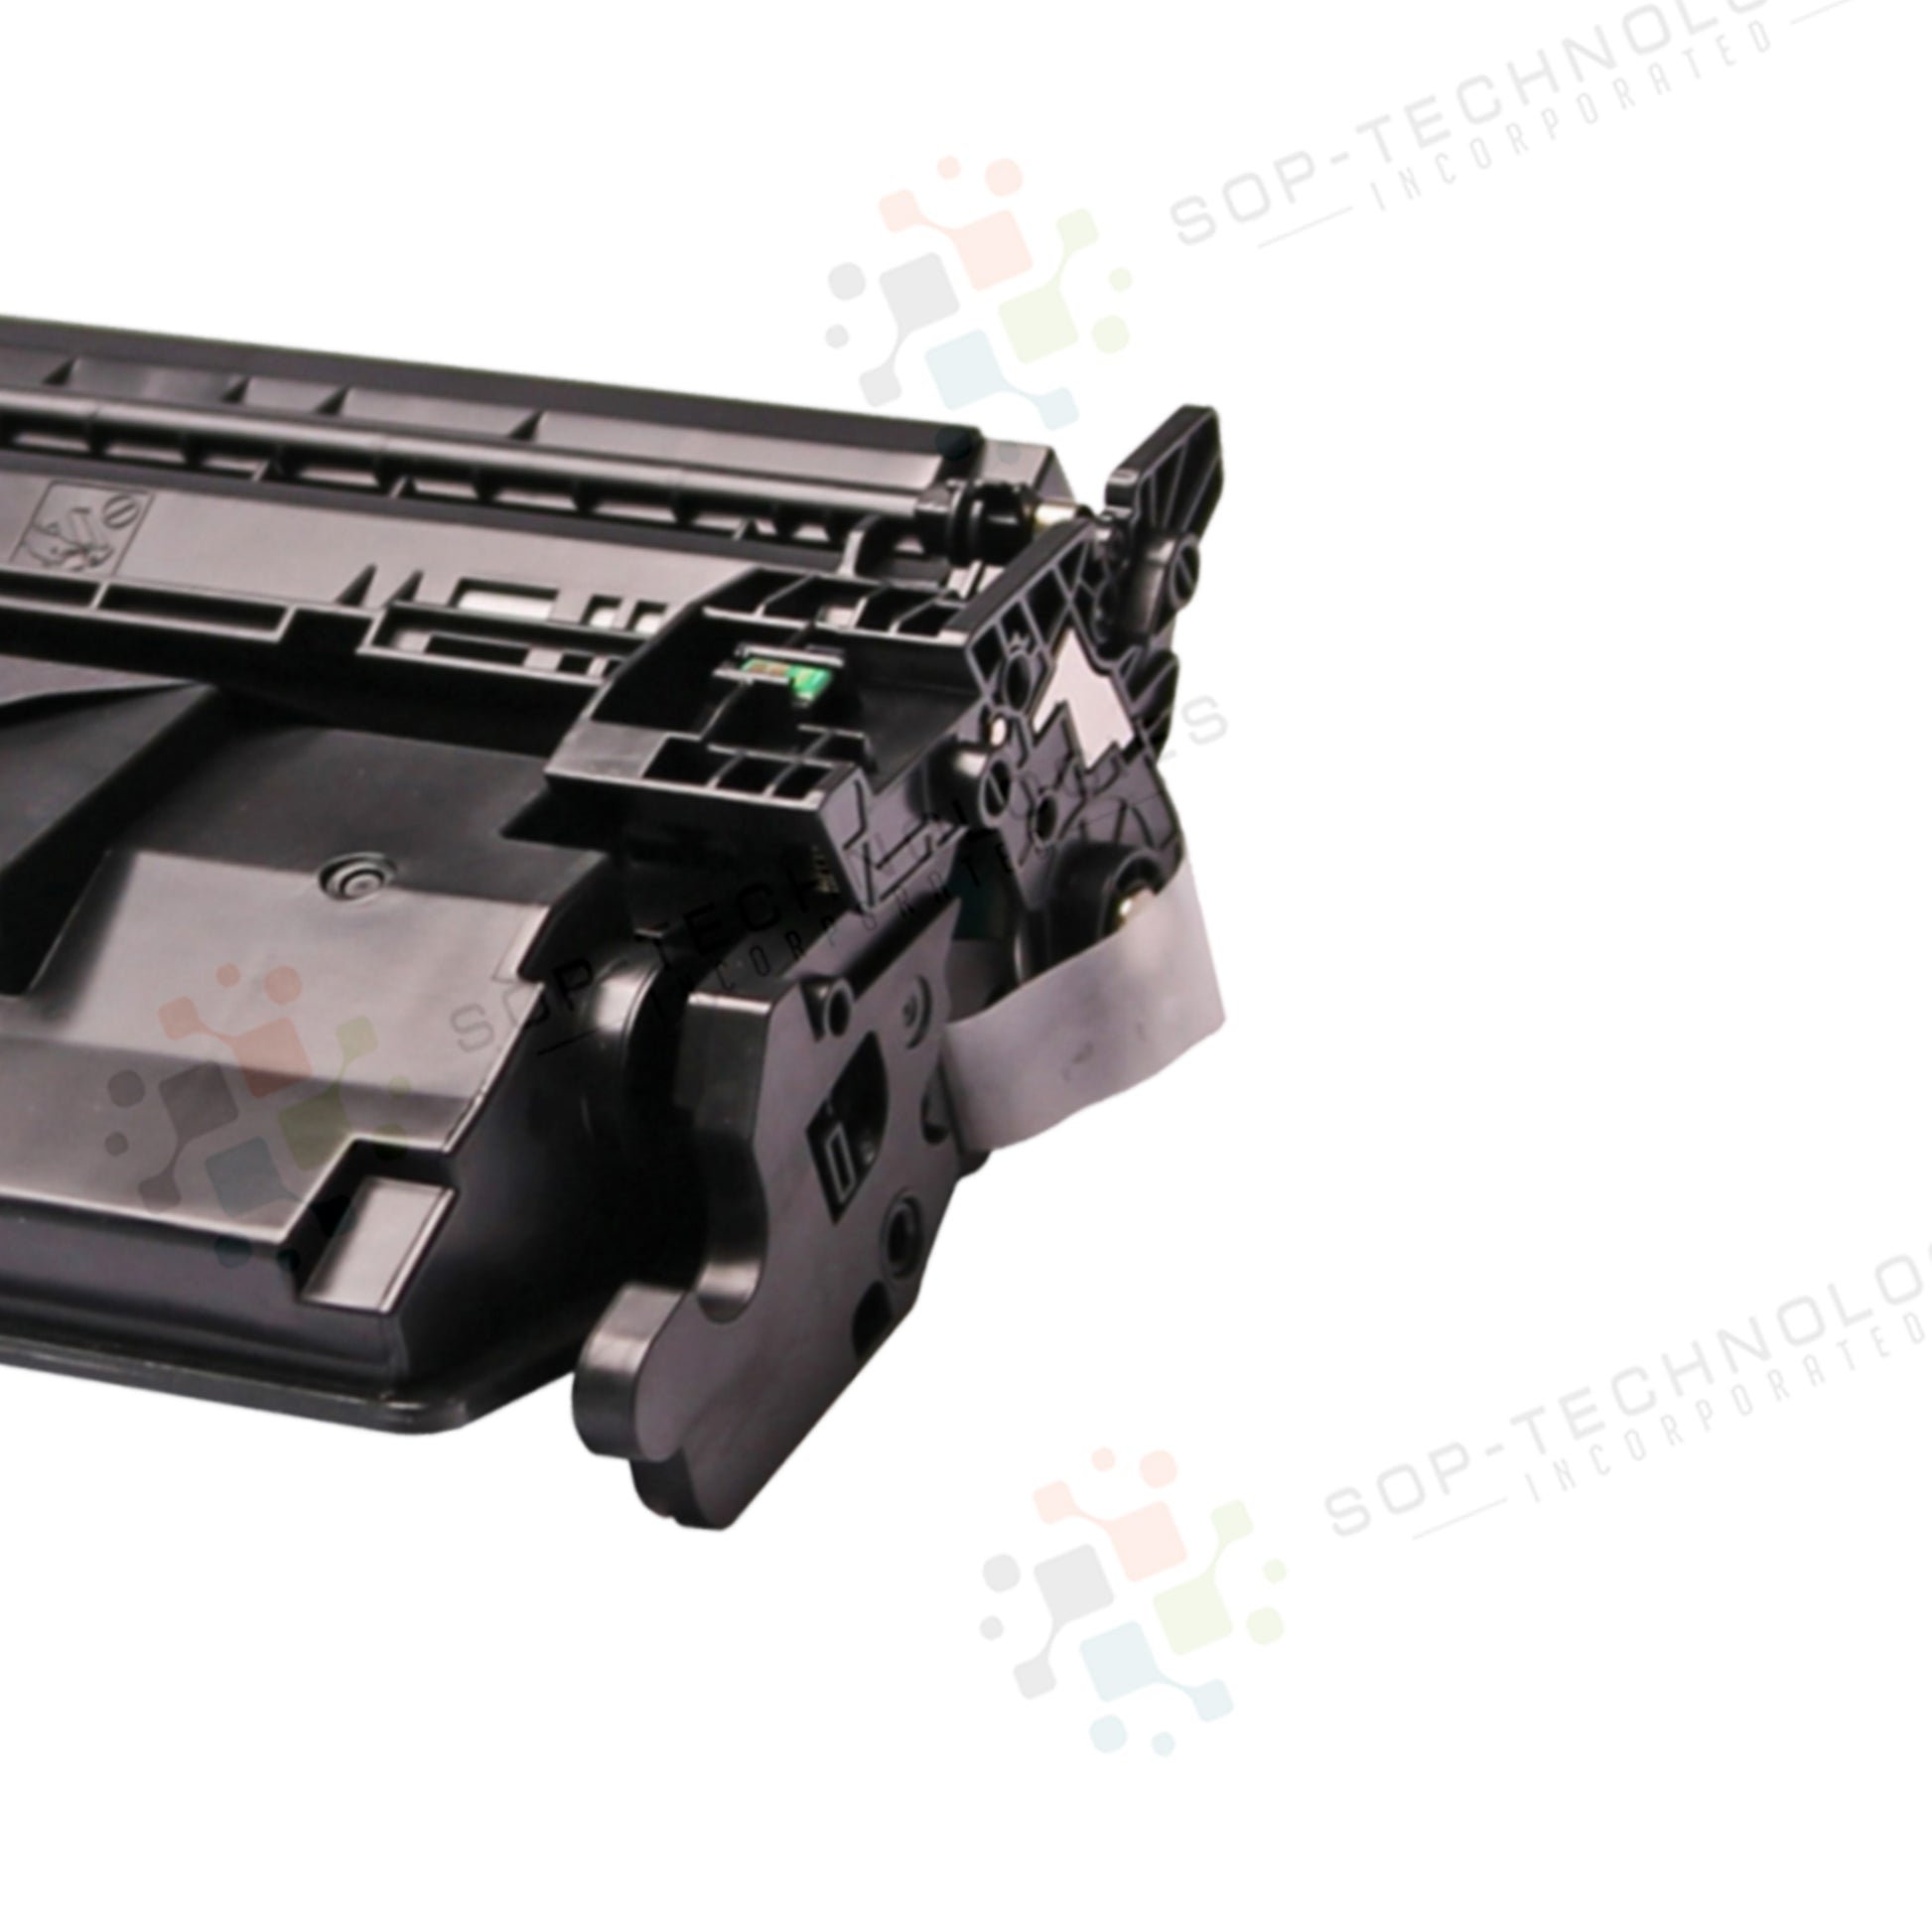 3pk Toner Cartridge for Canon imageCLASS LBP214dw - SOP-TECHNOLOGIES, INC.